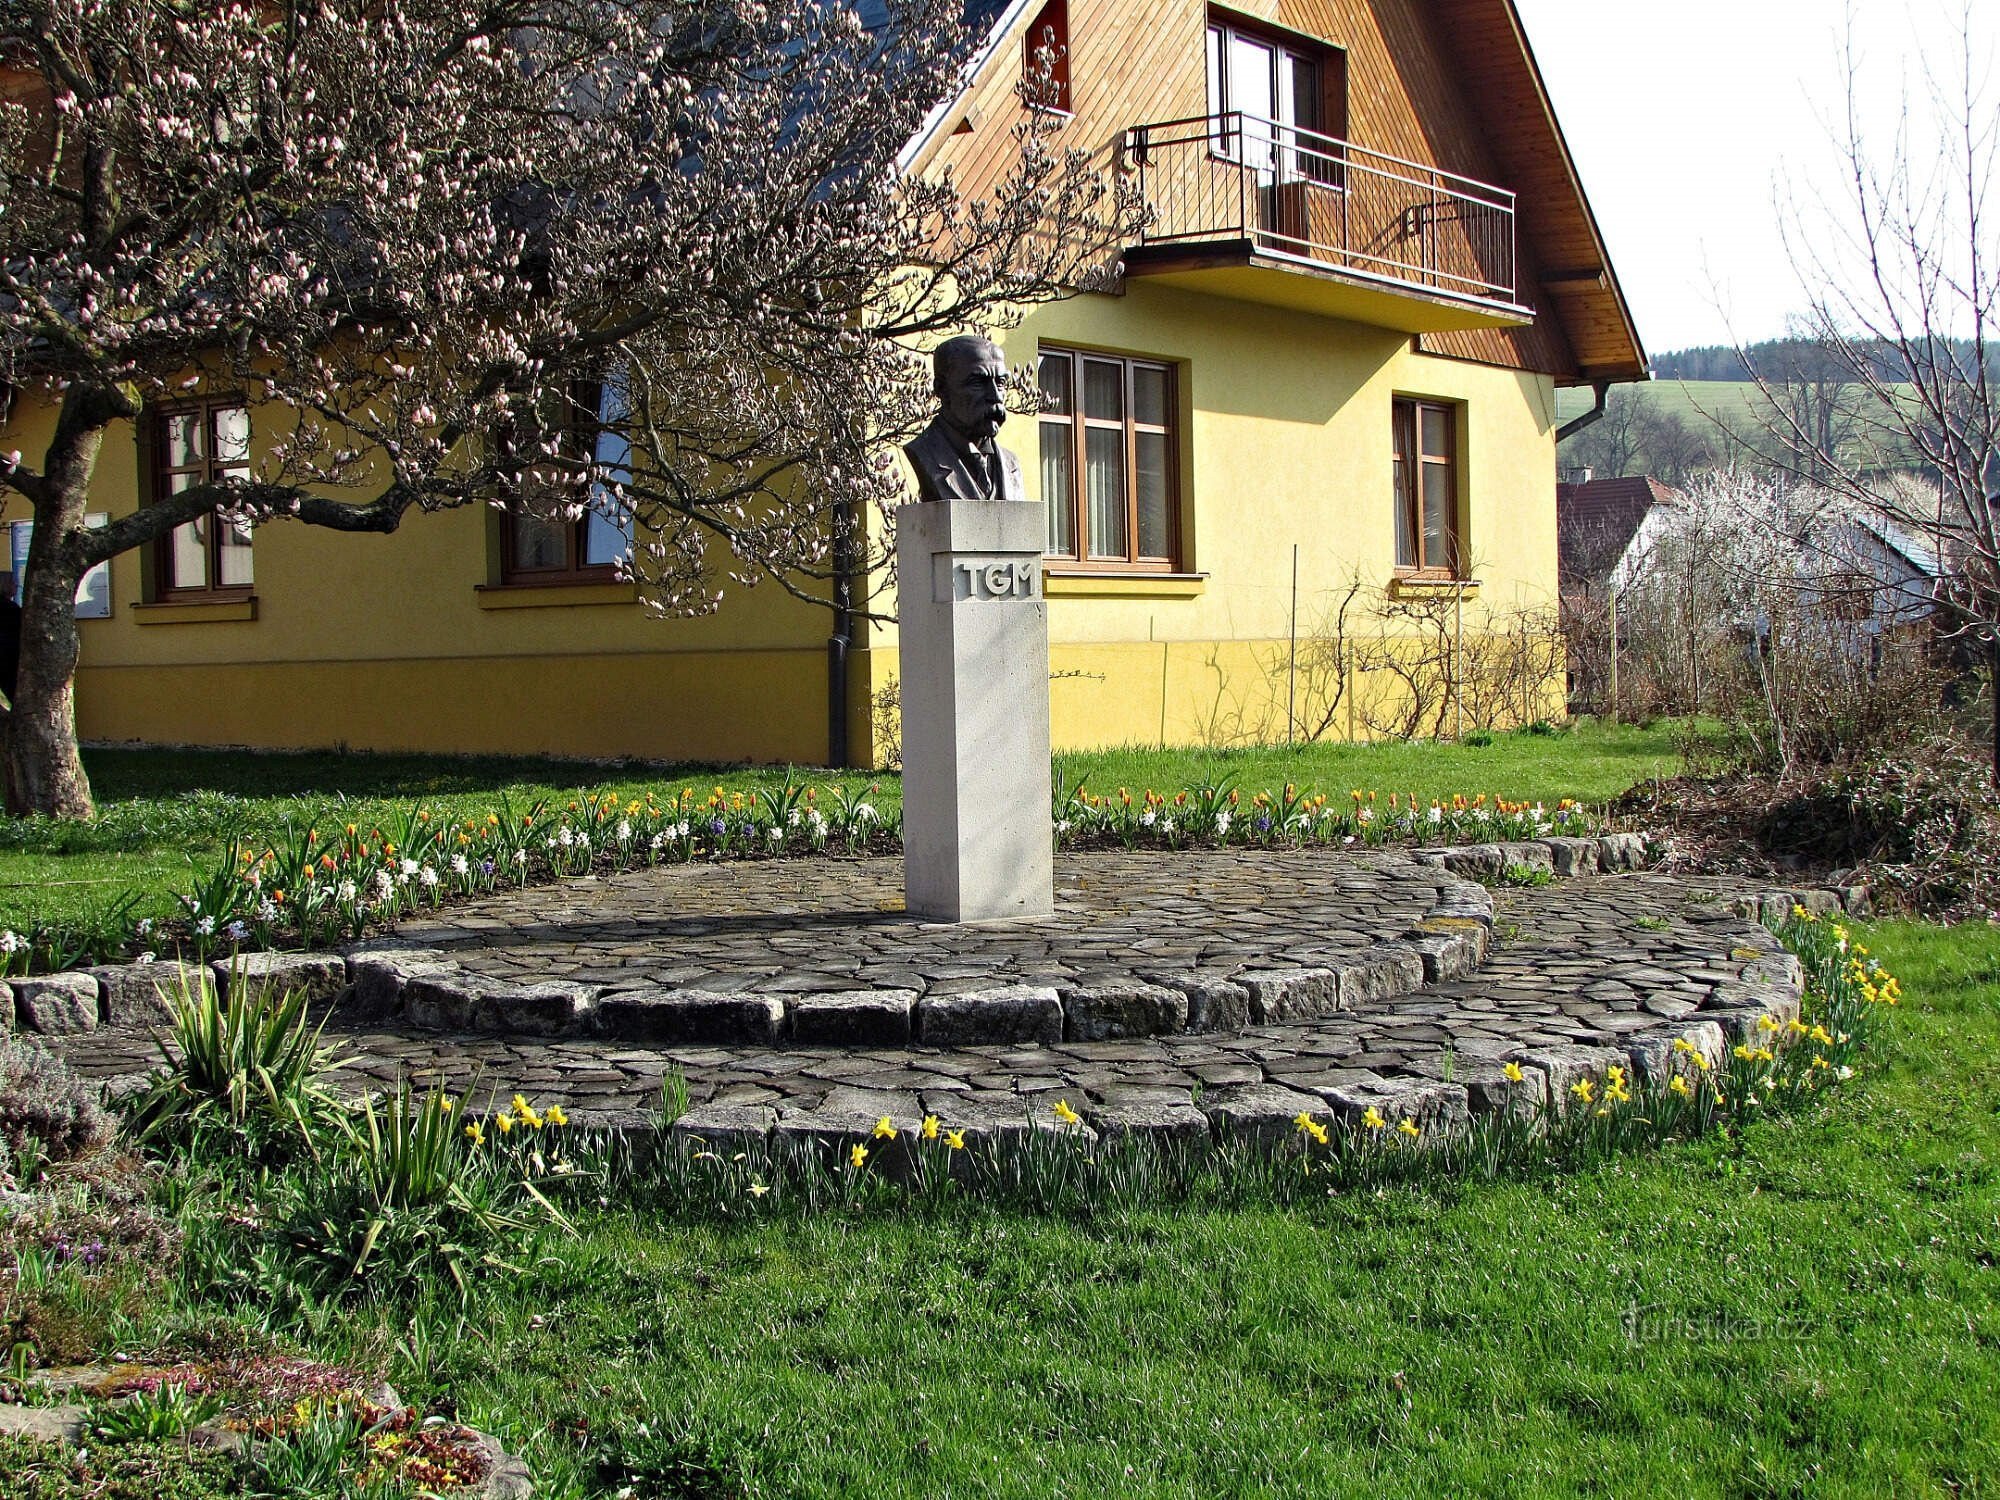 Ratiboř - TGMasarykin rintakuva ja kaatuneiden muistomerkki